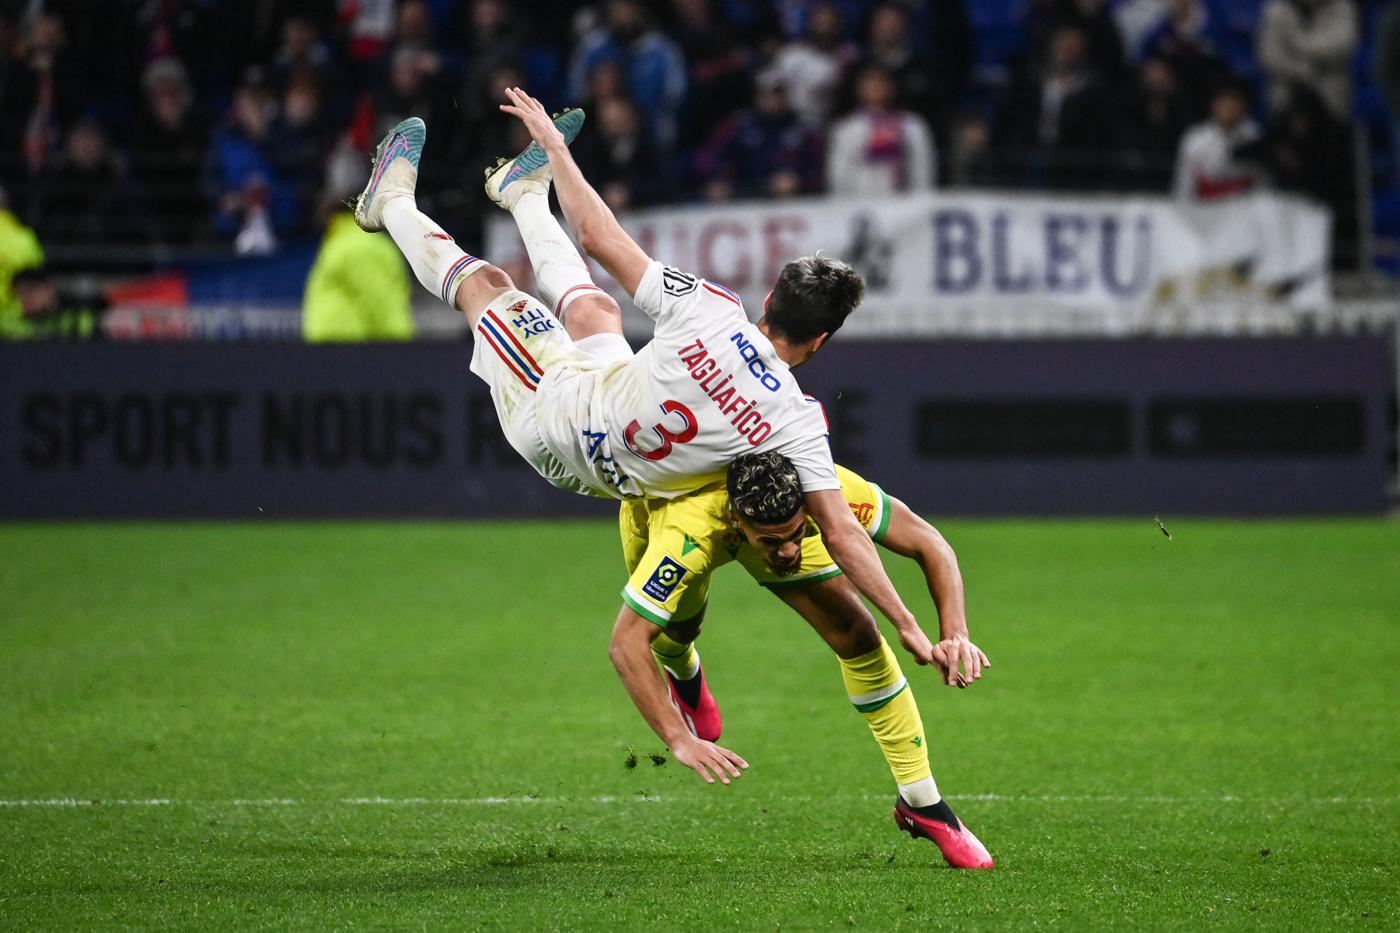 Lyon v Nantes - 1-1. Mistrzostwa Francji, runda 28. Przegląd meczu, statystyki.